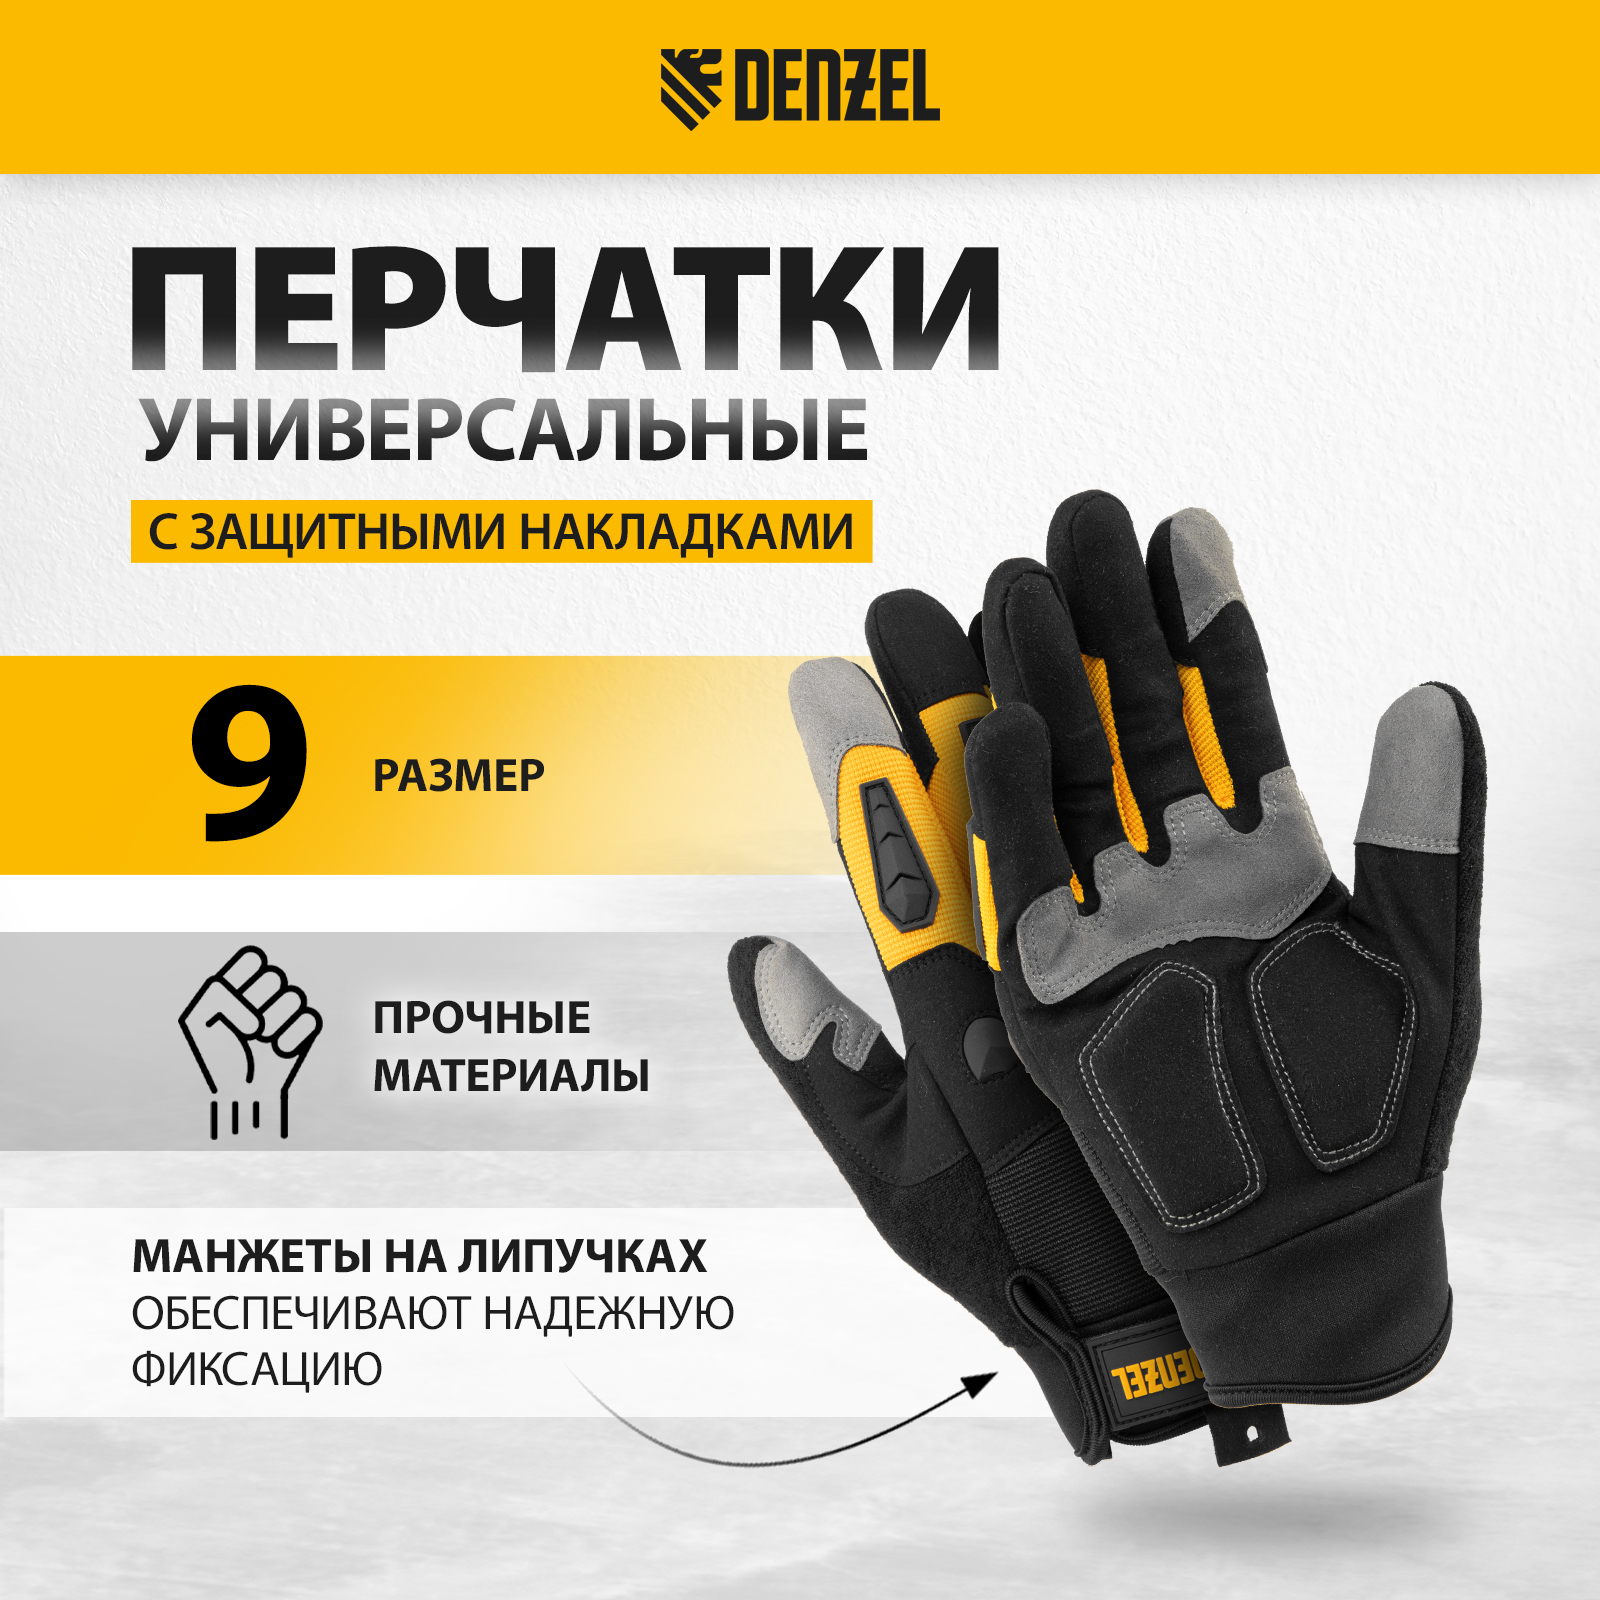 Перчатки универсальные DENZEL размер 9 68002 перчатки гк спецобъединение защита зима пер 209